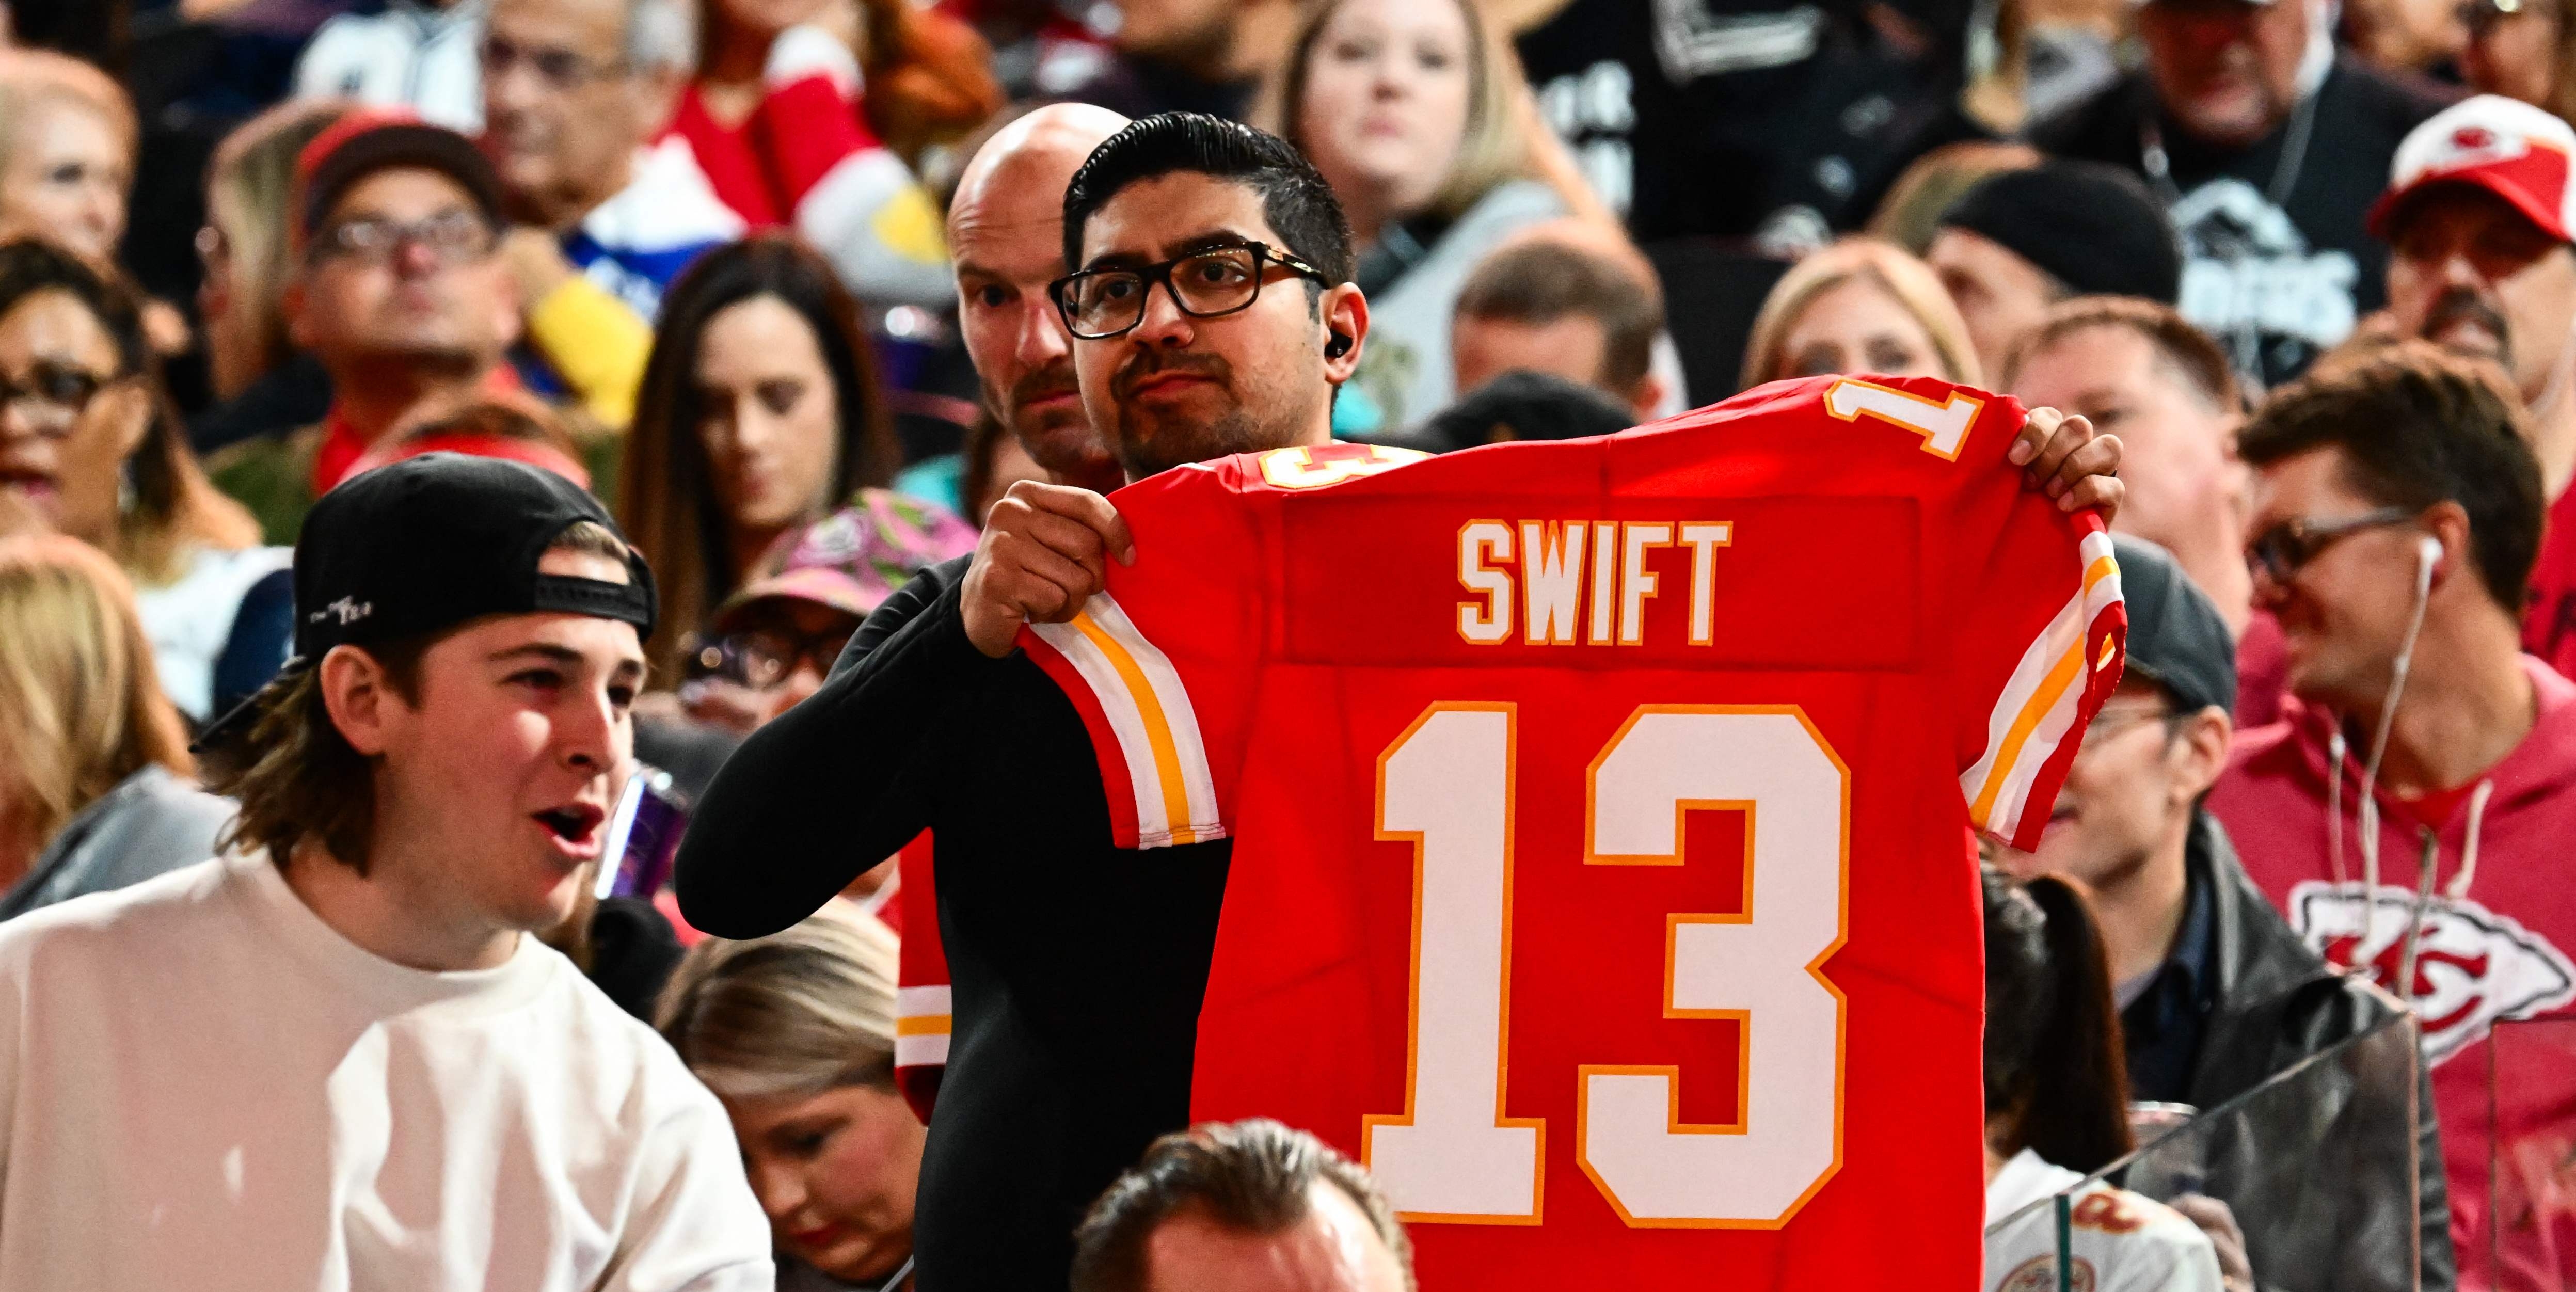 Un fan con una camiseta de Kansas City Chiefs con el número 13 en referencia al novio de Taylor Swift.